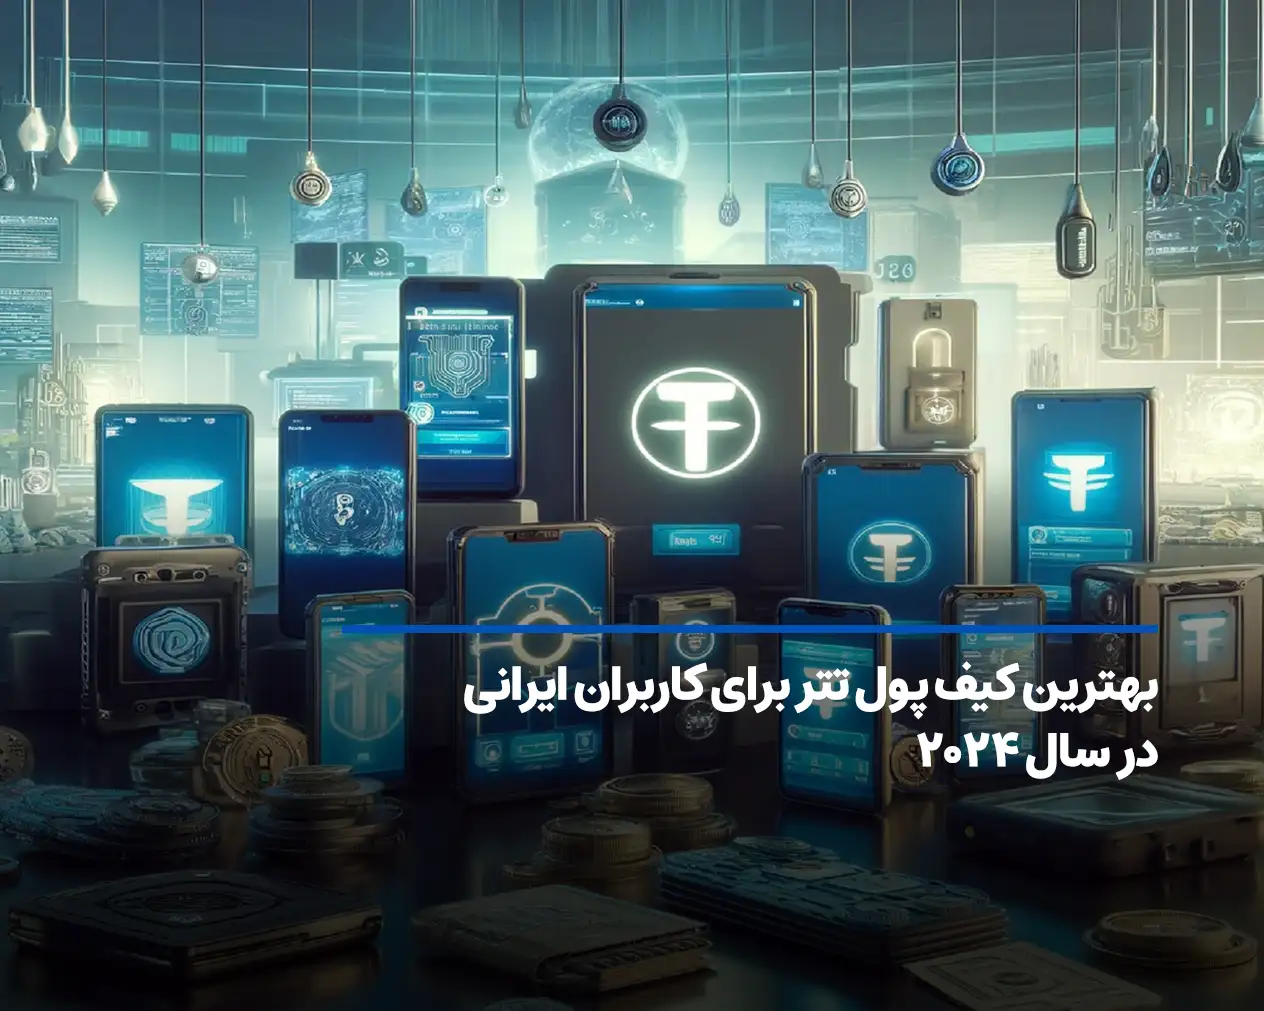 بهترین کیف پول تتر برای کاربران ایرانی؛ معرفی ۱۰ کیف پول برتر USDT